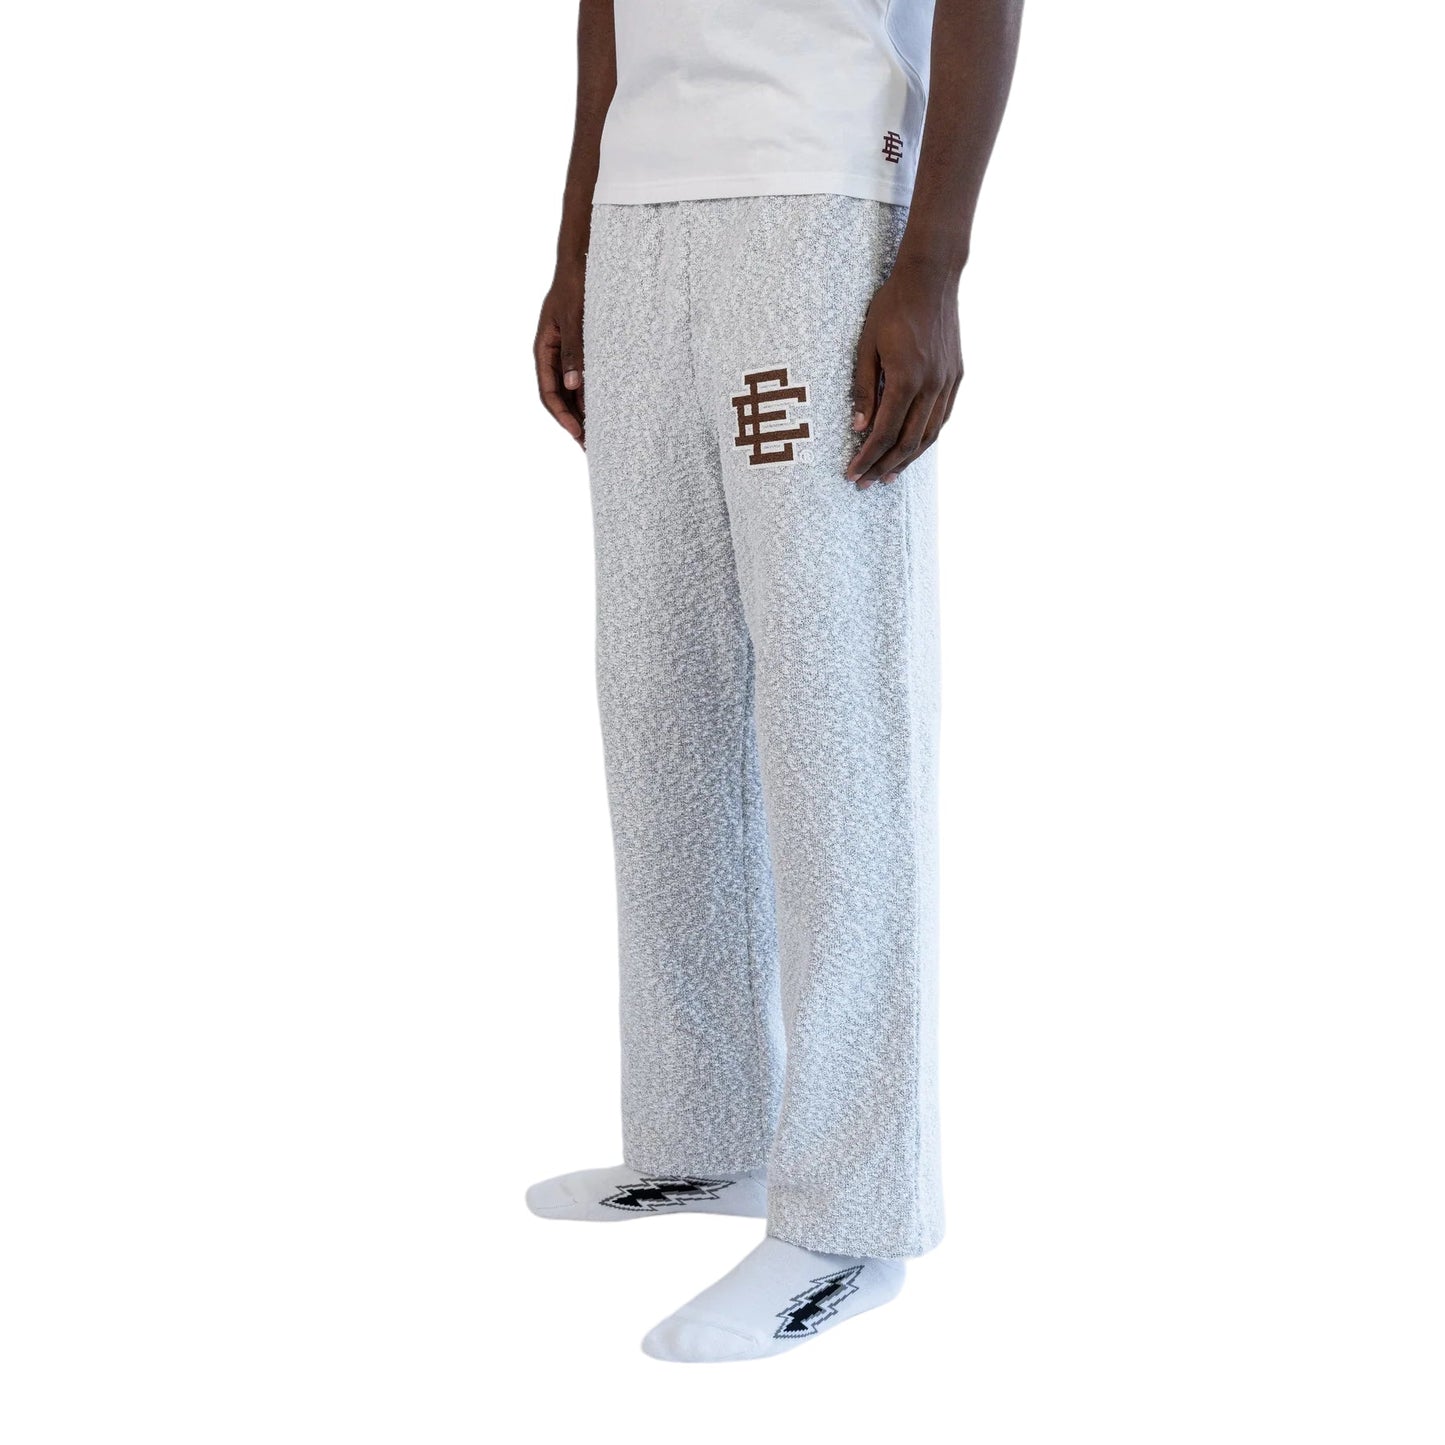 Eric Emanuel EE Boucle Sweat Pant Gray / Brown - Supra Sneakers